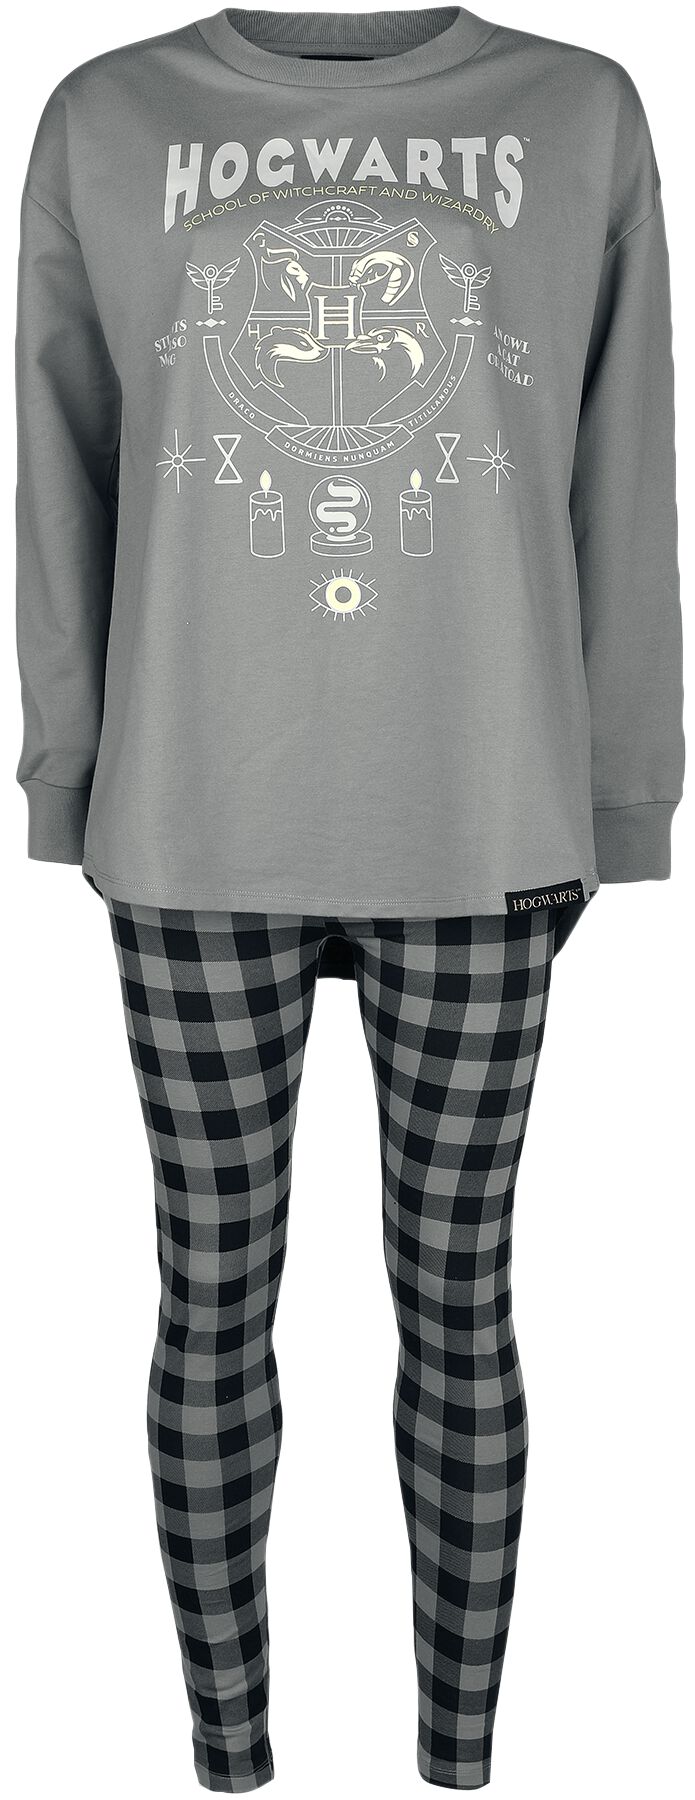 Pyjama de Harry Potter - Poudlard - XL - pour Femme - gris